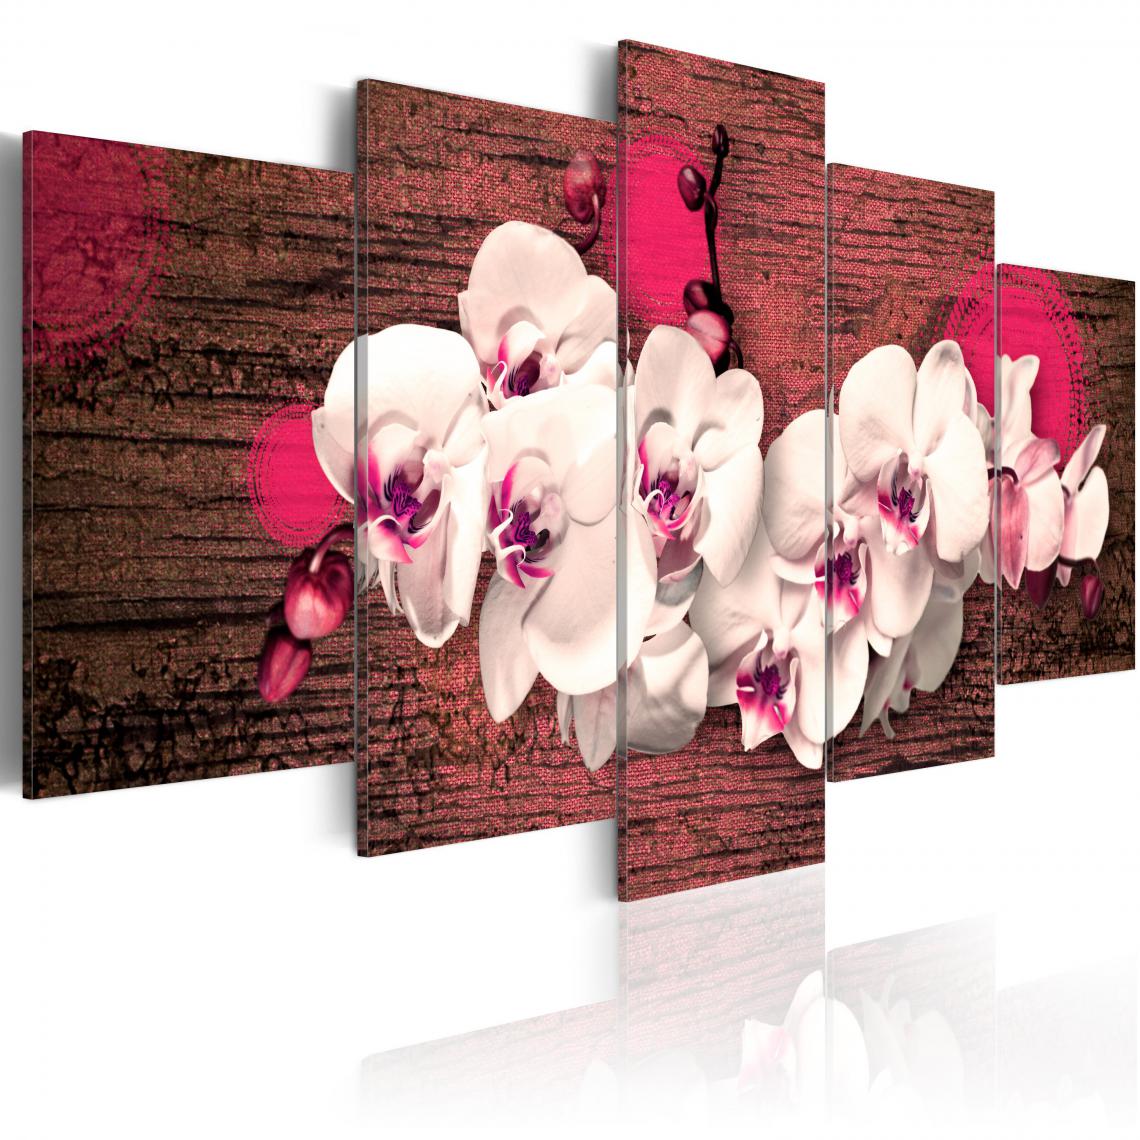 Decoshop26 - Tableau sur toile en 5 panneaux décoration murale image imprimée cadre en bois à suspendre Joie et orchidée 100x50 cm 11_0009481 - Tableaux, peintures